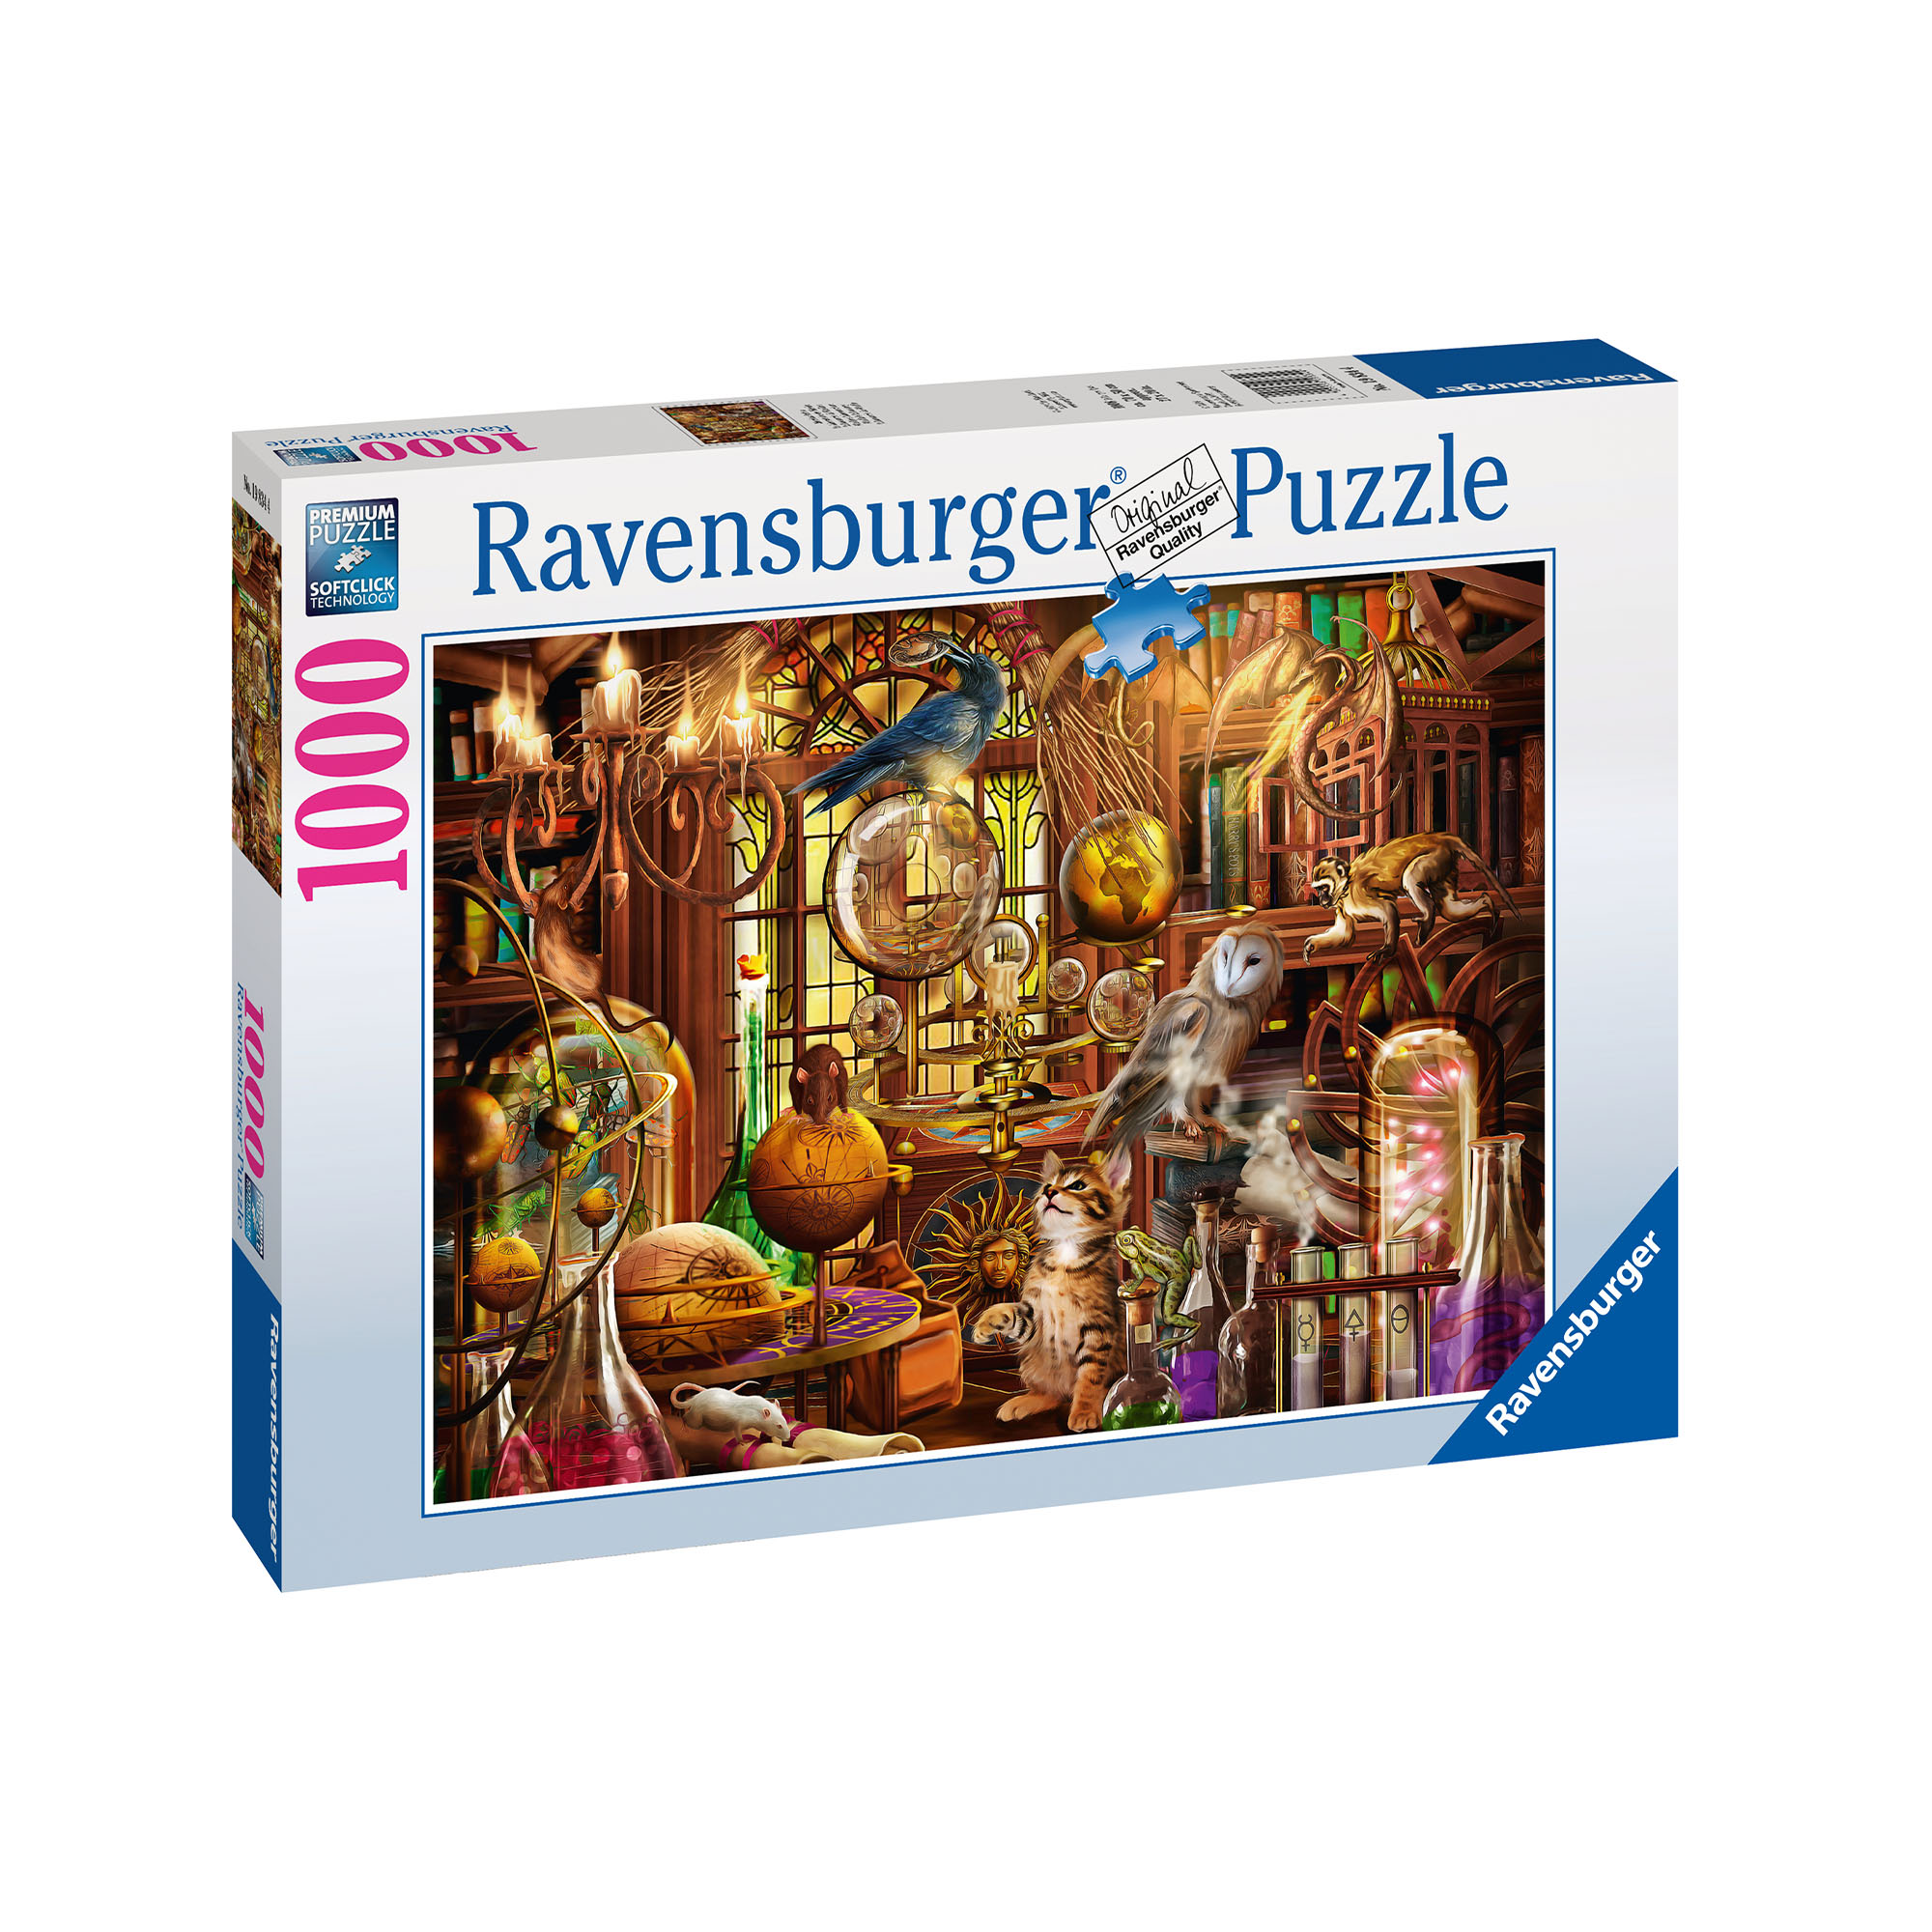 Ravensburger Puzzle 1000 pezzi 19834 - Laboratorio Di Merlino, , large